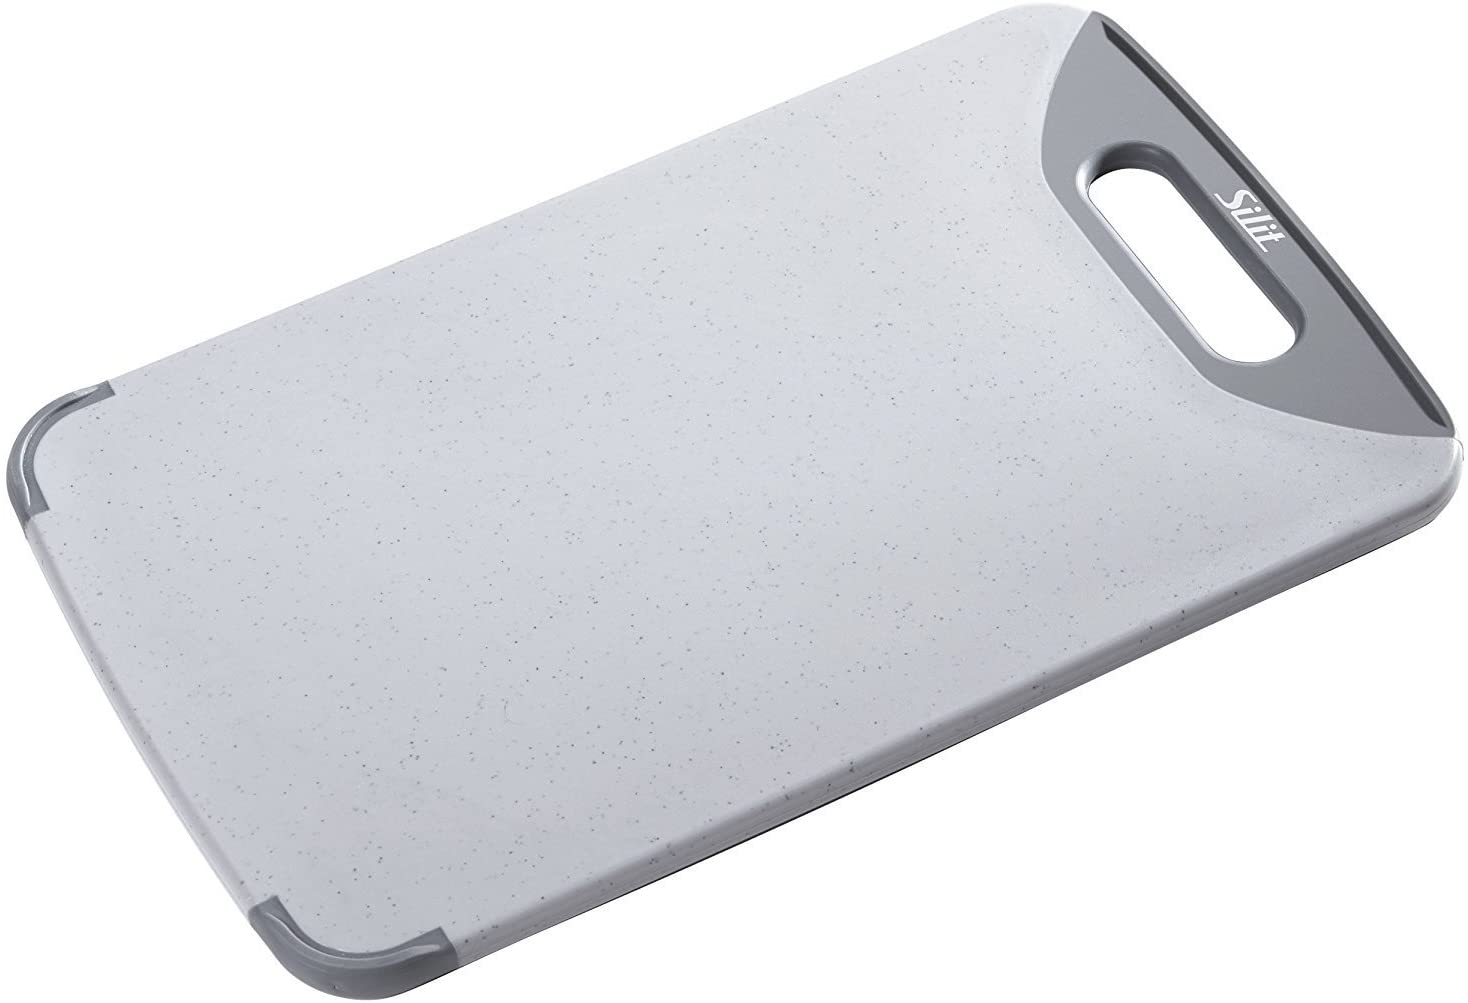 WMF Silit Cutting board with handle, Chopping board, 32 x 20 cm, Grey, 0020761001